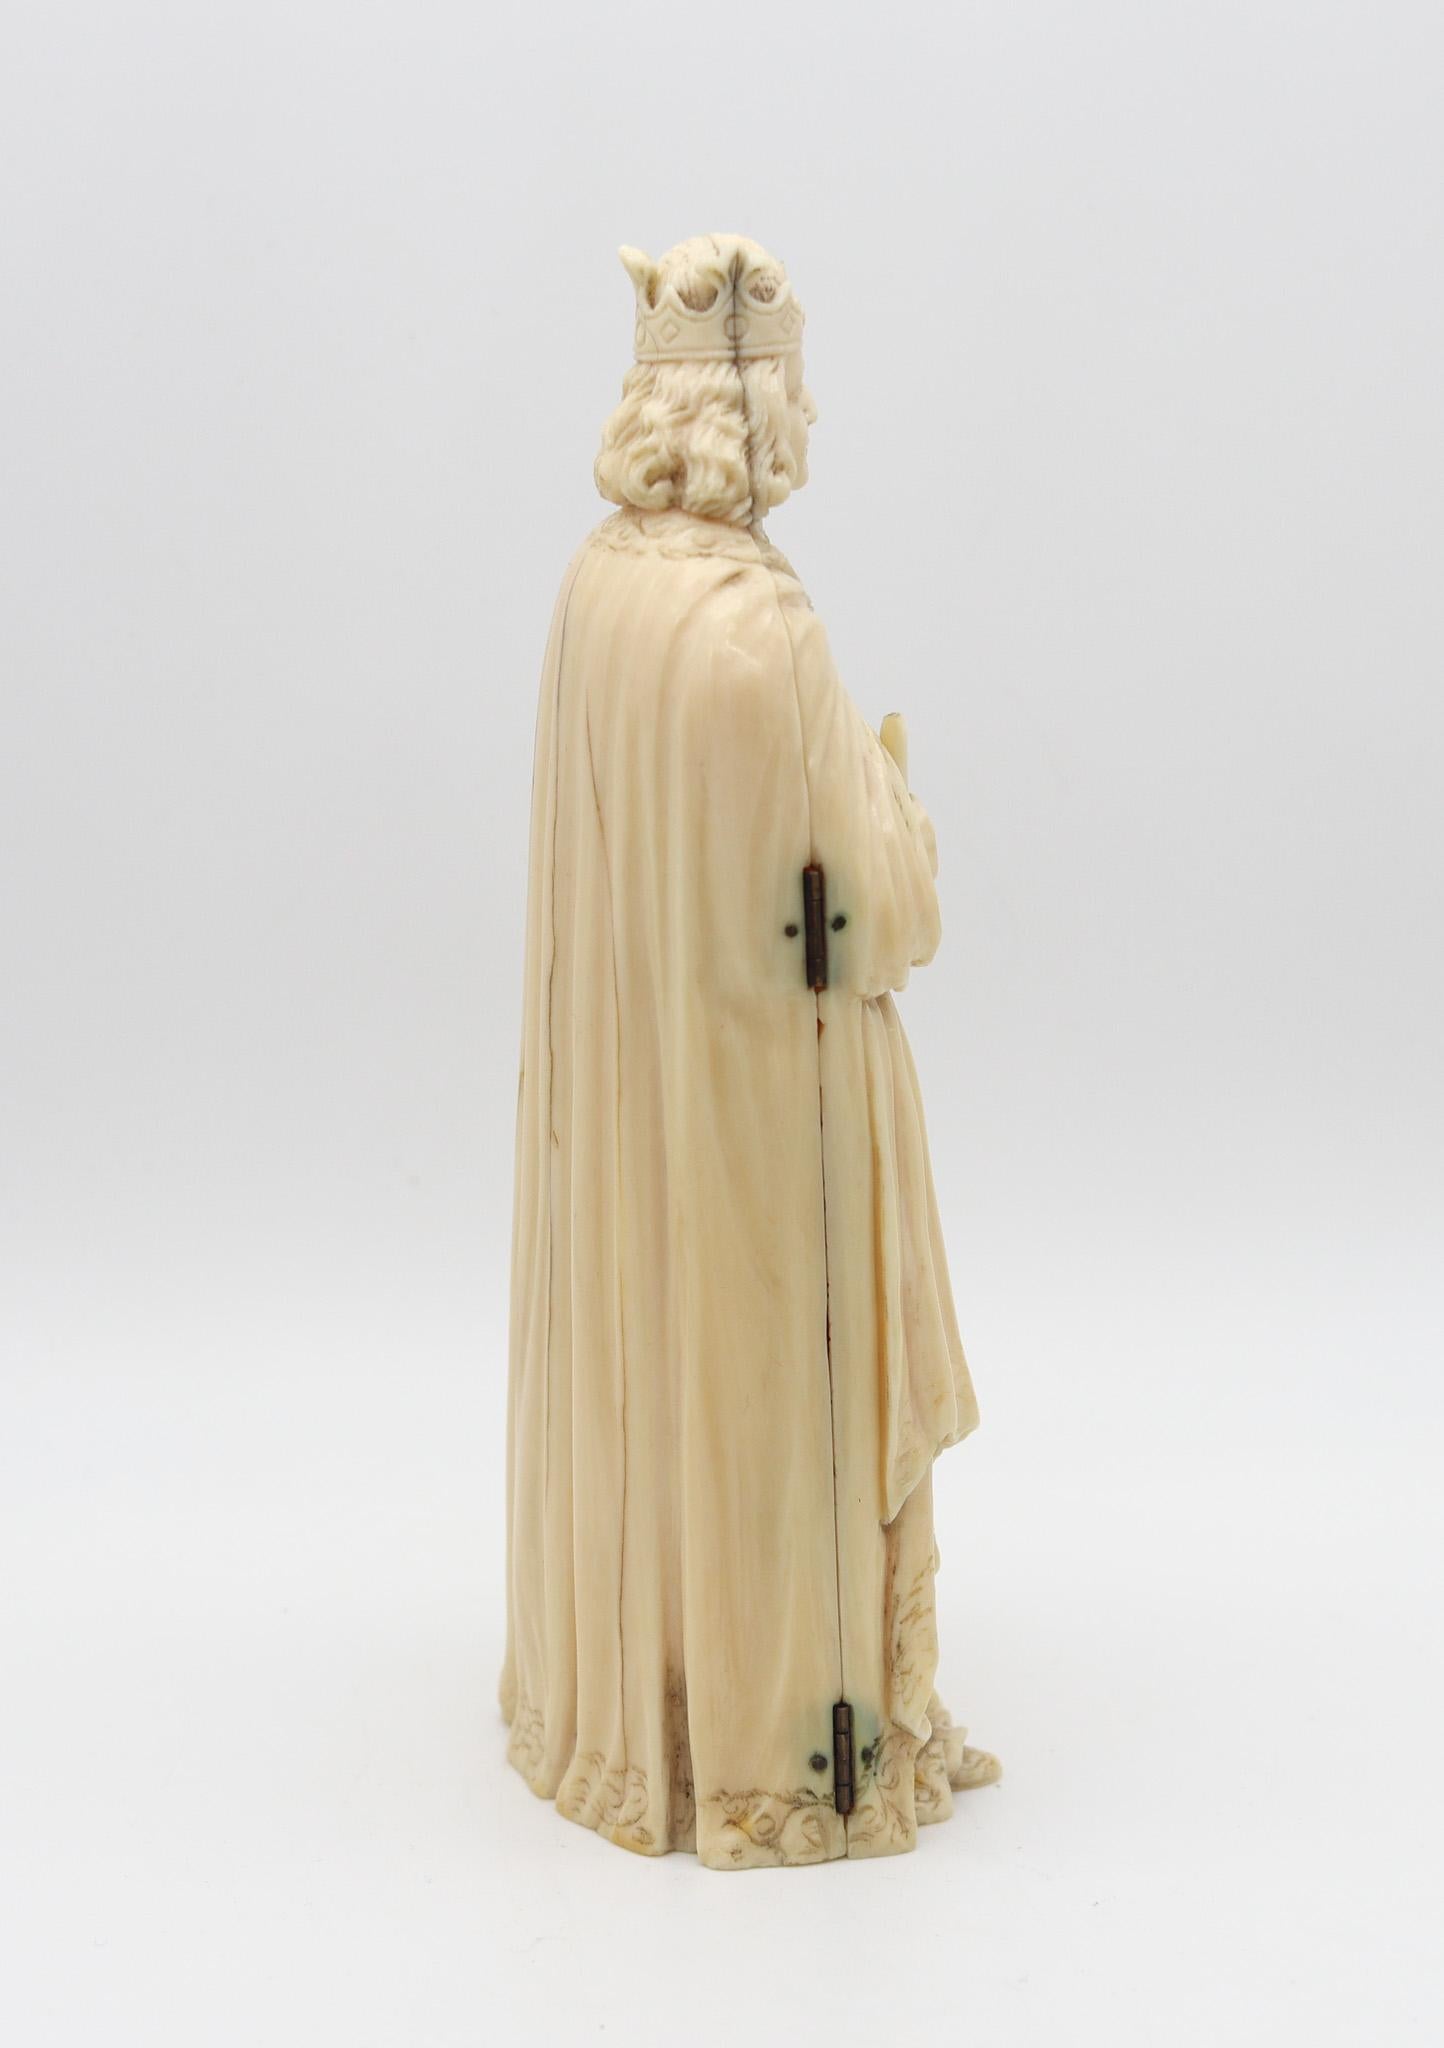 XIXe siècle Triptyque de sculpture flamande de 1850 représentant l'empereur Charlemagne trônant en vente